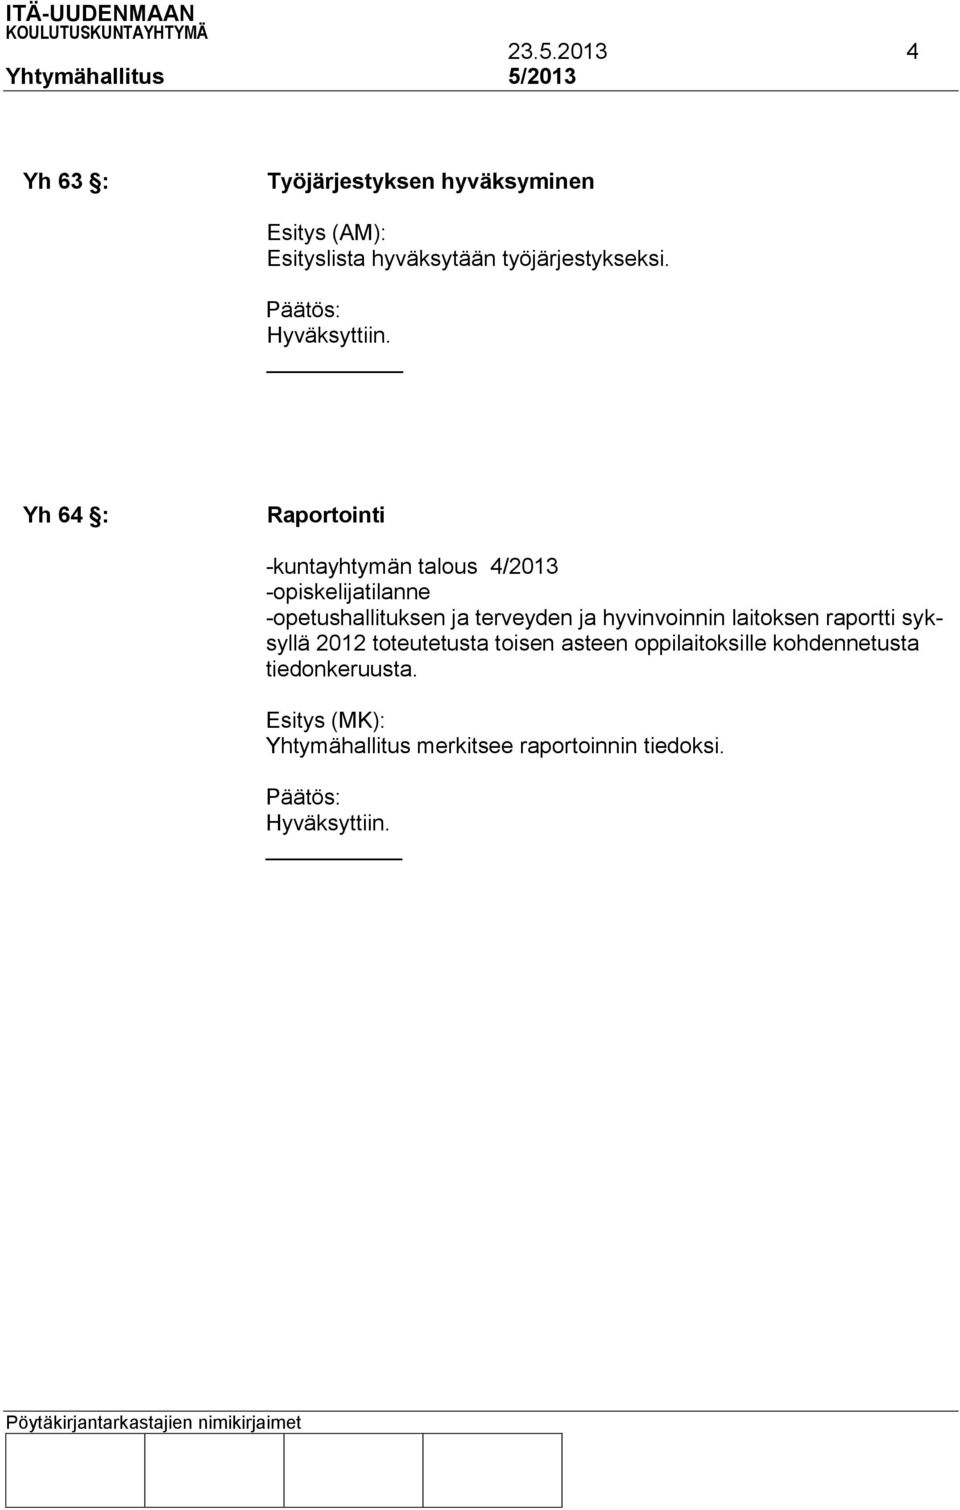 Yh 64 : Raportointi -kuntayhtymän talous 4/2013 -opiskelijatilanne -opetushallituksen ja